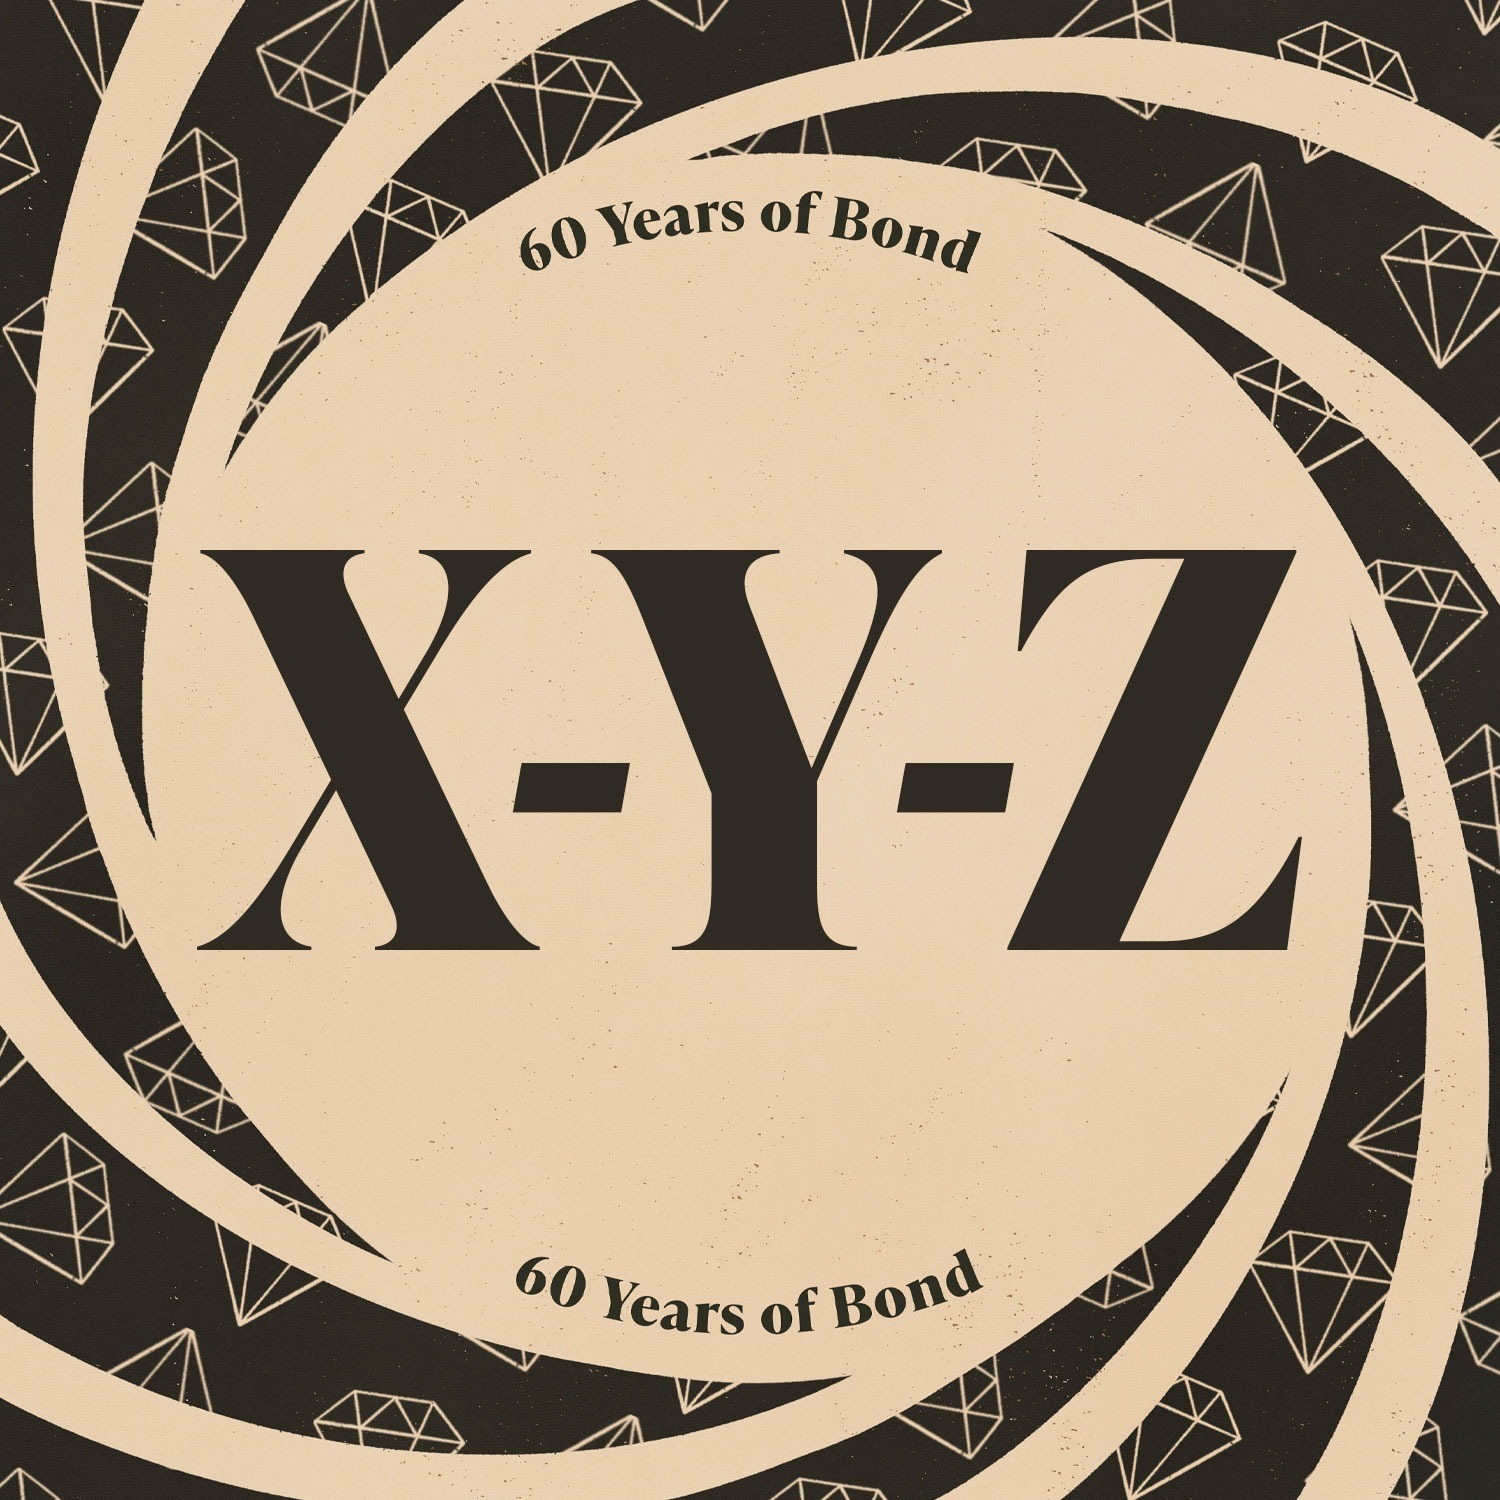 X-Y-Z: Hans Zimmer, Zukovsky, Max Zorin and more